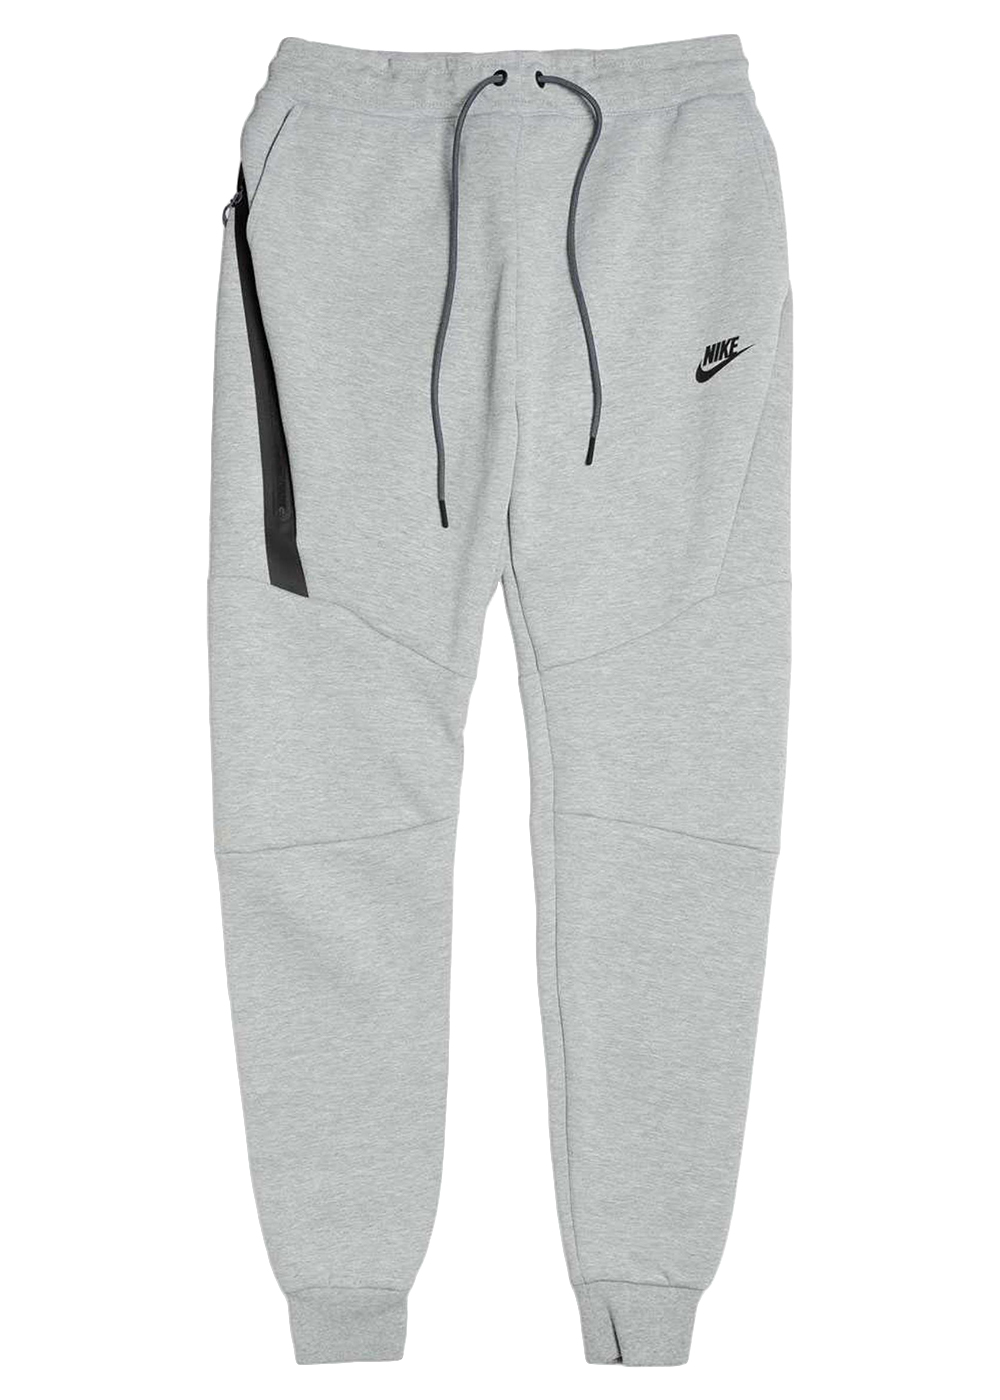 Nike Sportswear Men's Club Plus Shoebox Cuffed Pants | Sportchek